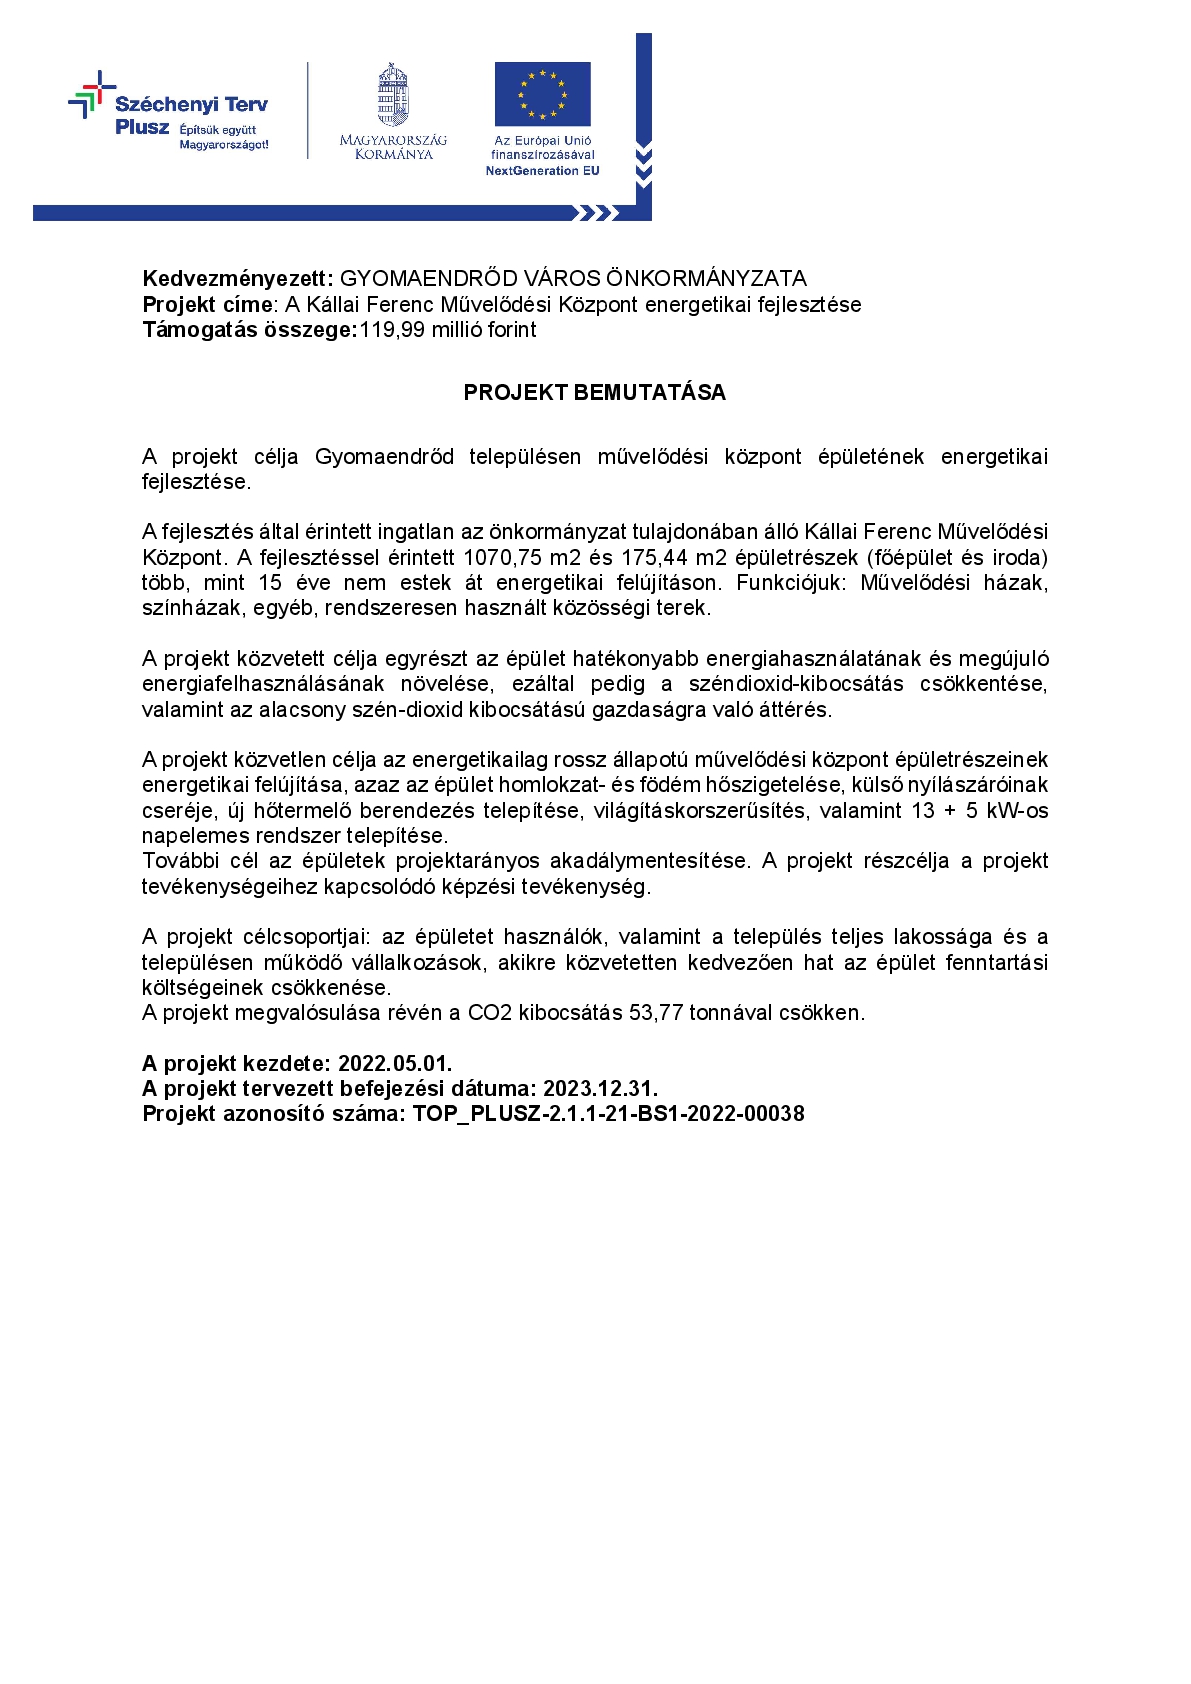 TOP_PLUSZ-2.1.1-21-BS1-2022-00038 A Kállai Ferenc Művelődési Központ energetikai fejlesztése